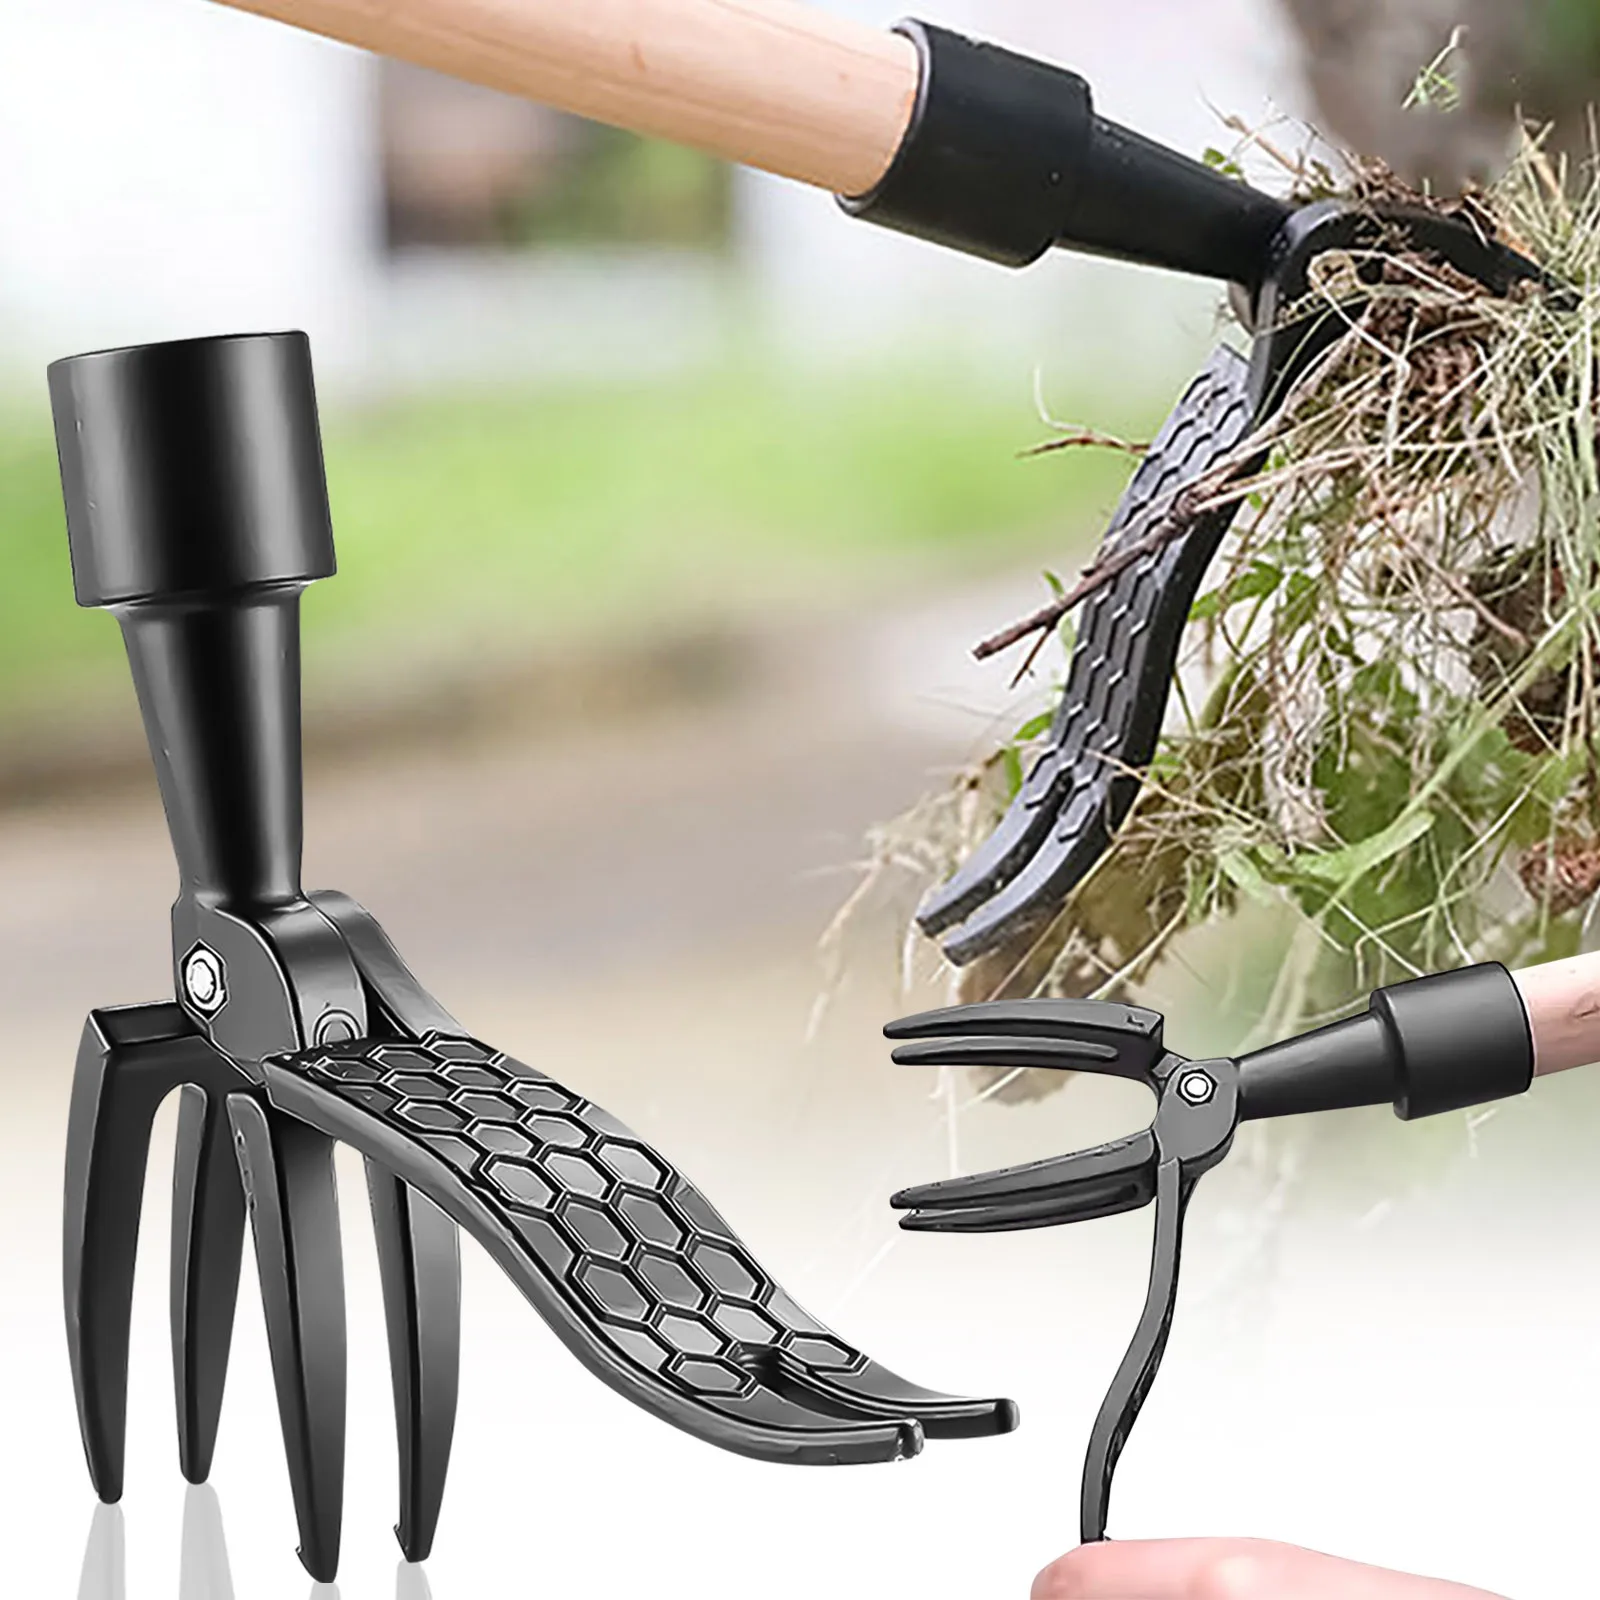 

Сменная металлическая головка для вытаскивания сорняков, новейший аксессуар для садоводства, копания, вытаскивания